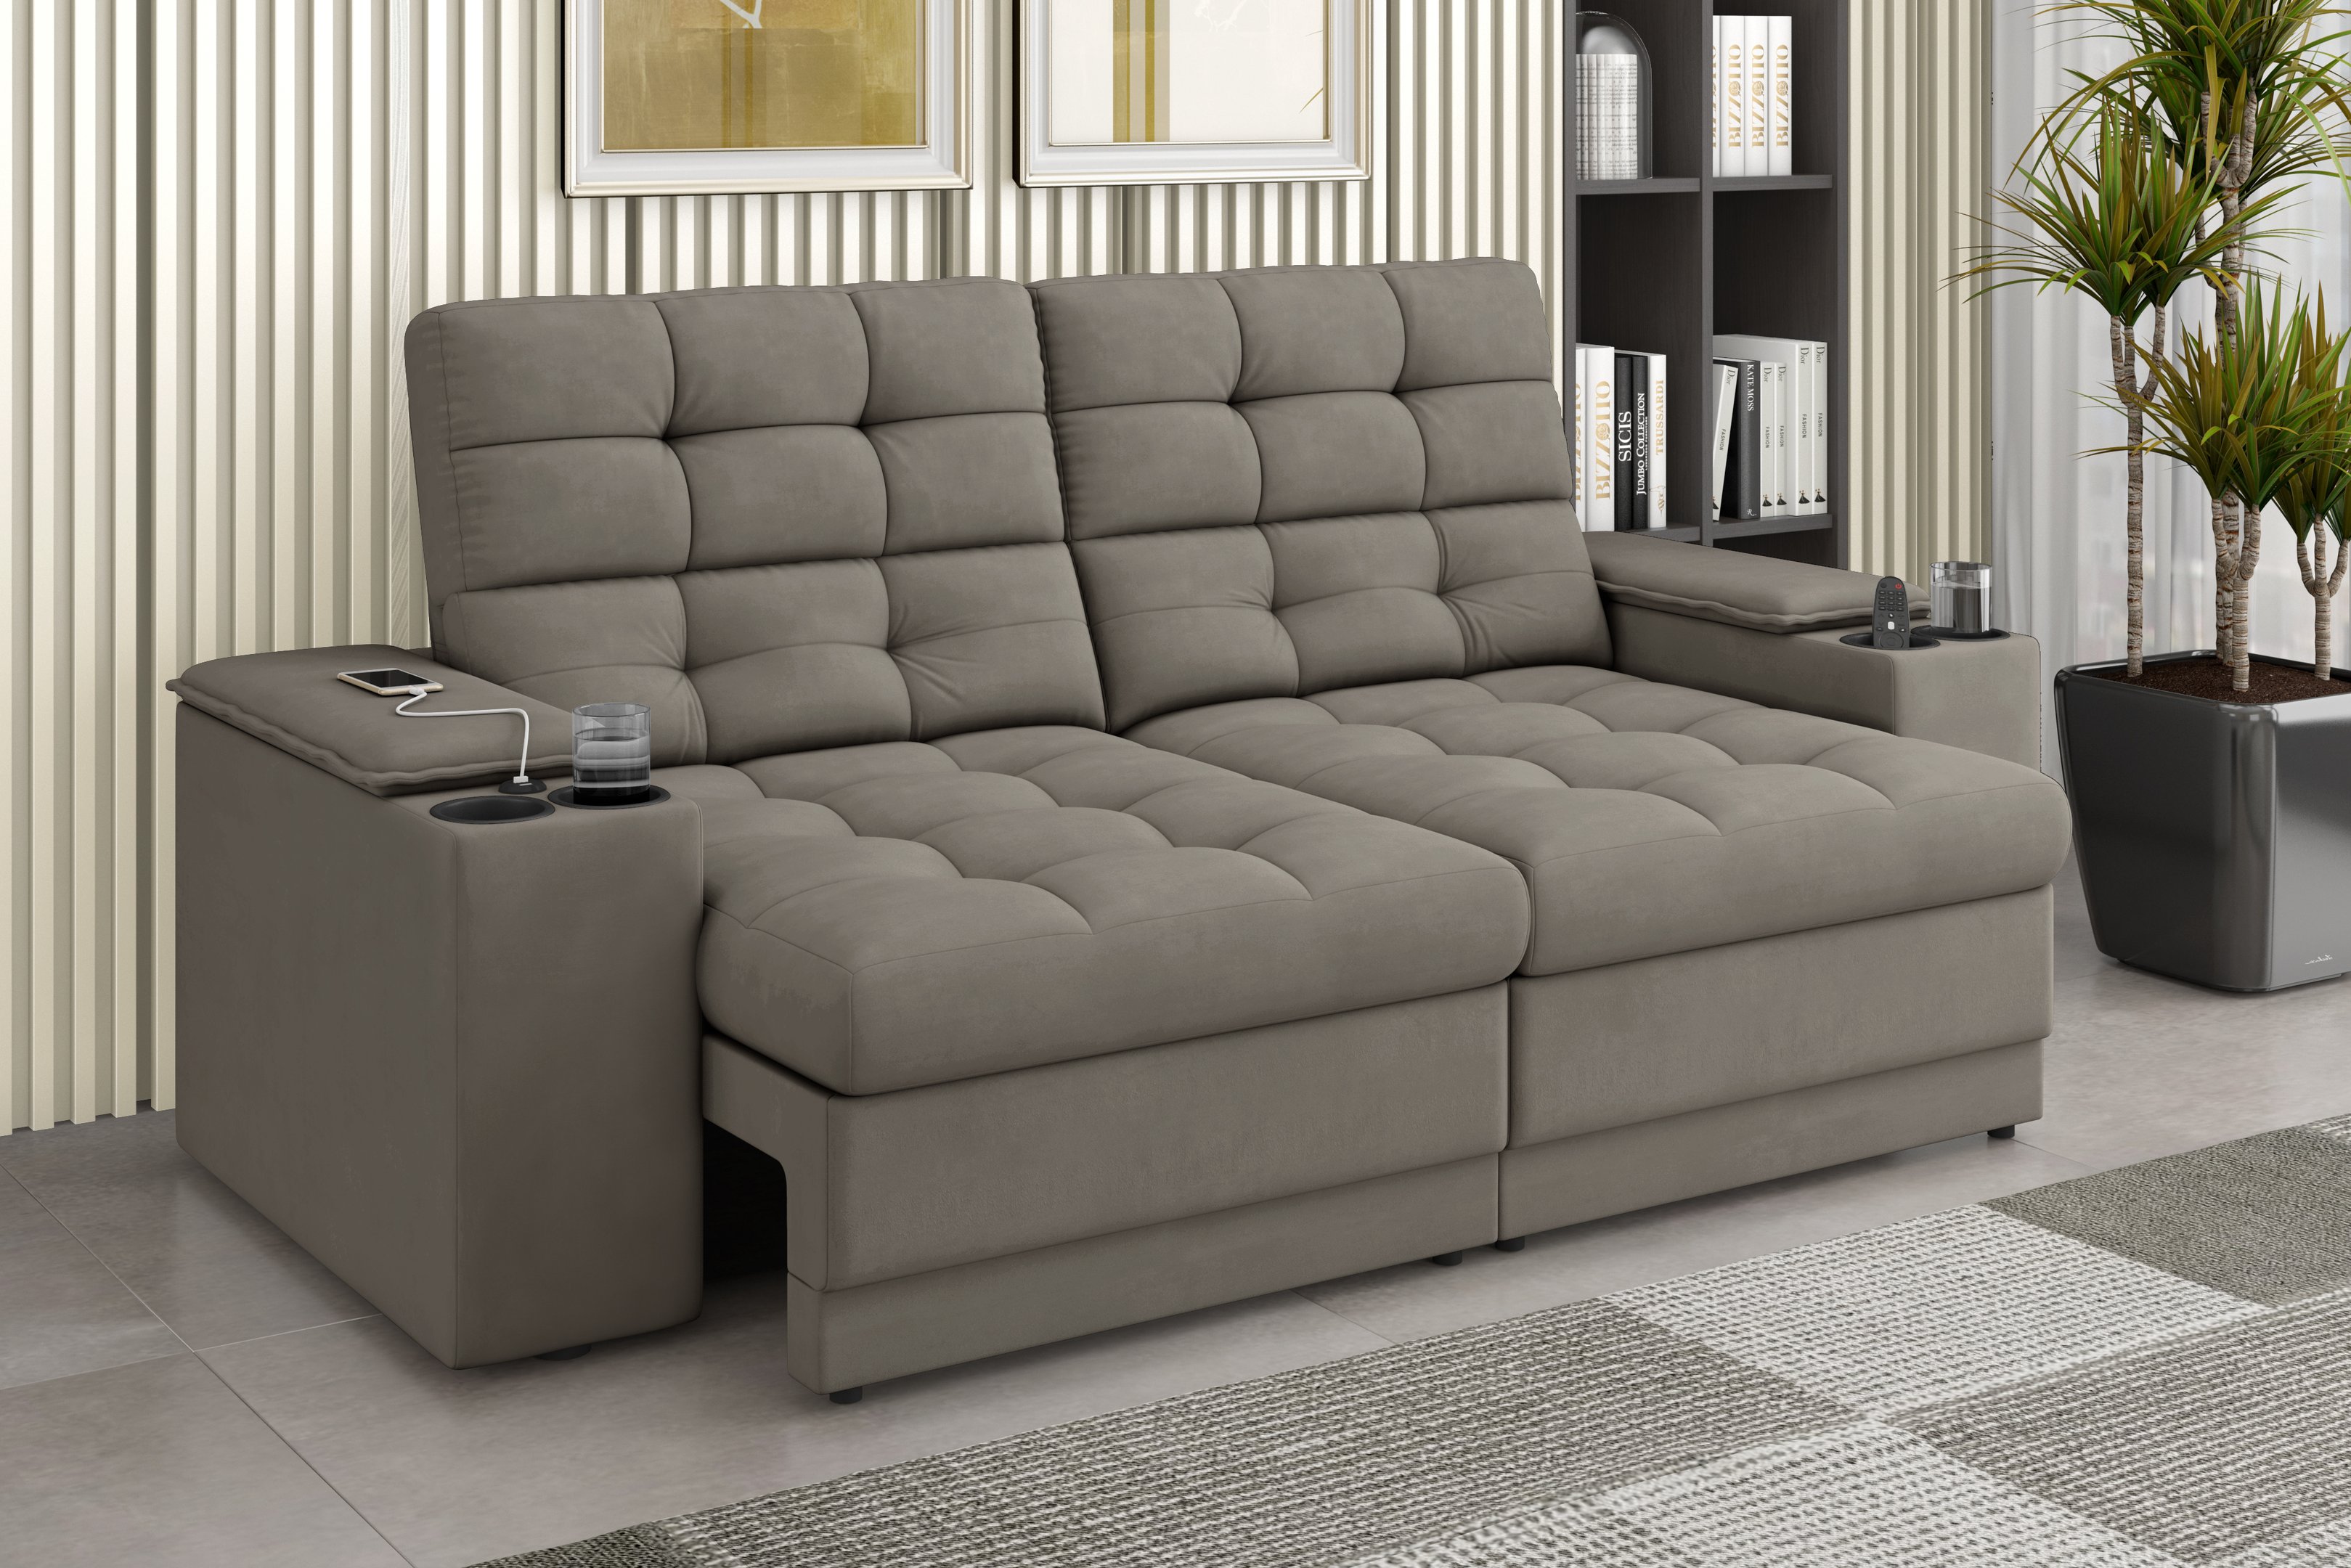 Sofá Confort Premium 2,05m Assento Retrátil/reclinável Porta Copos e Usb Suede Capuccino - Xflex